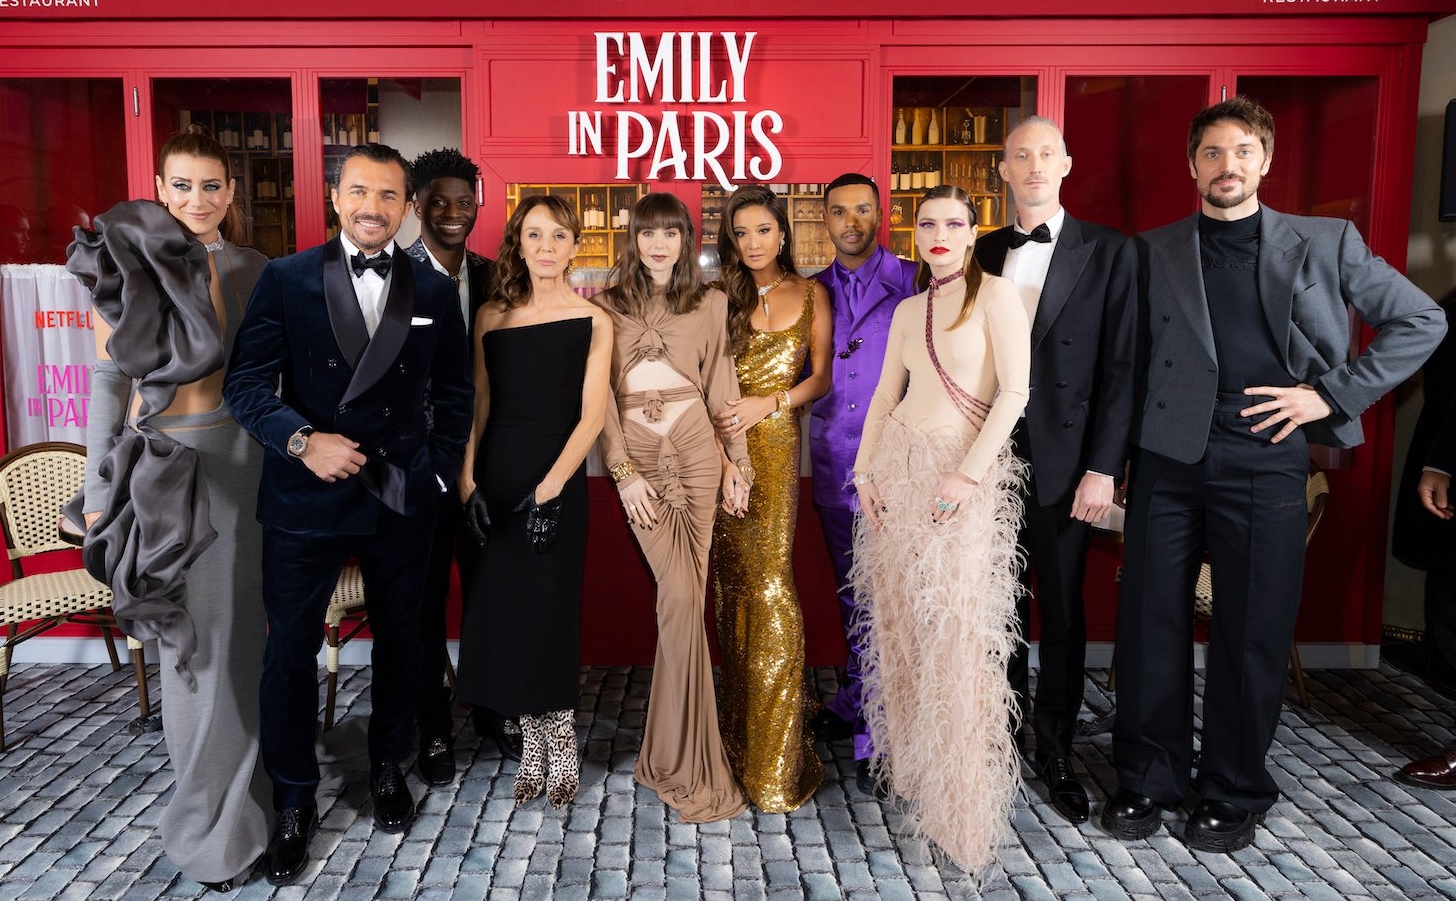 Λίλι Κόλινς – Emily in Paris: Εντυπωσιακή η πρωταγωνίστρια της σειράς στην παγκόσμια πρεμιέρα